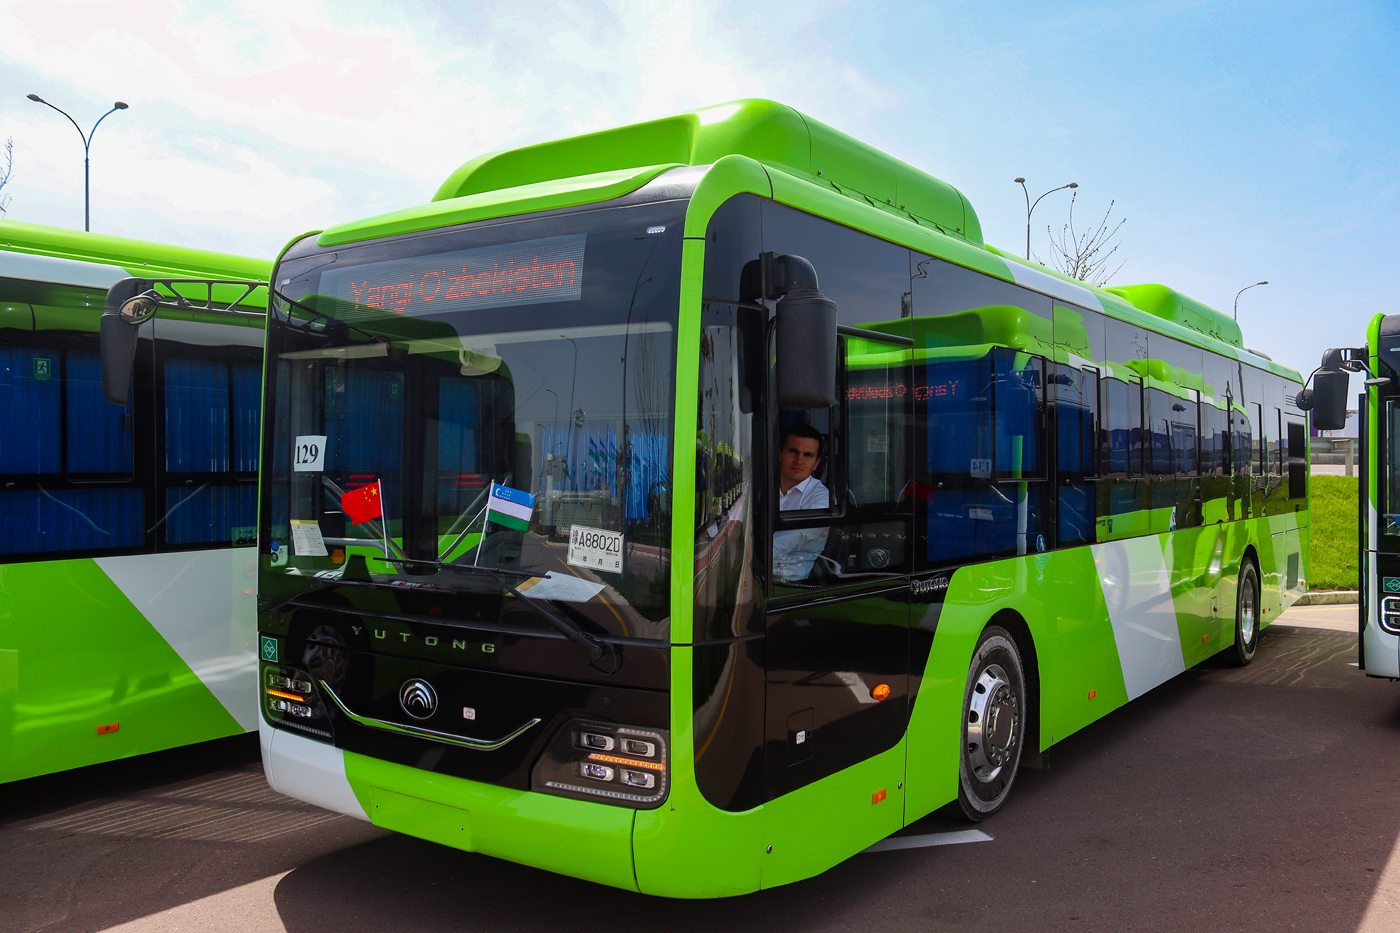 Tashkent — Presentatiom of new buses